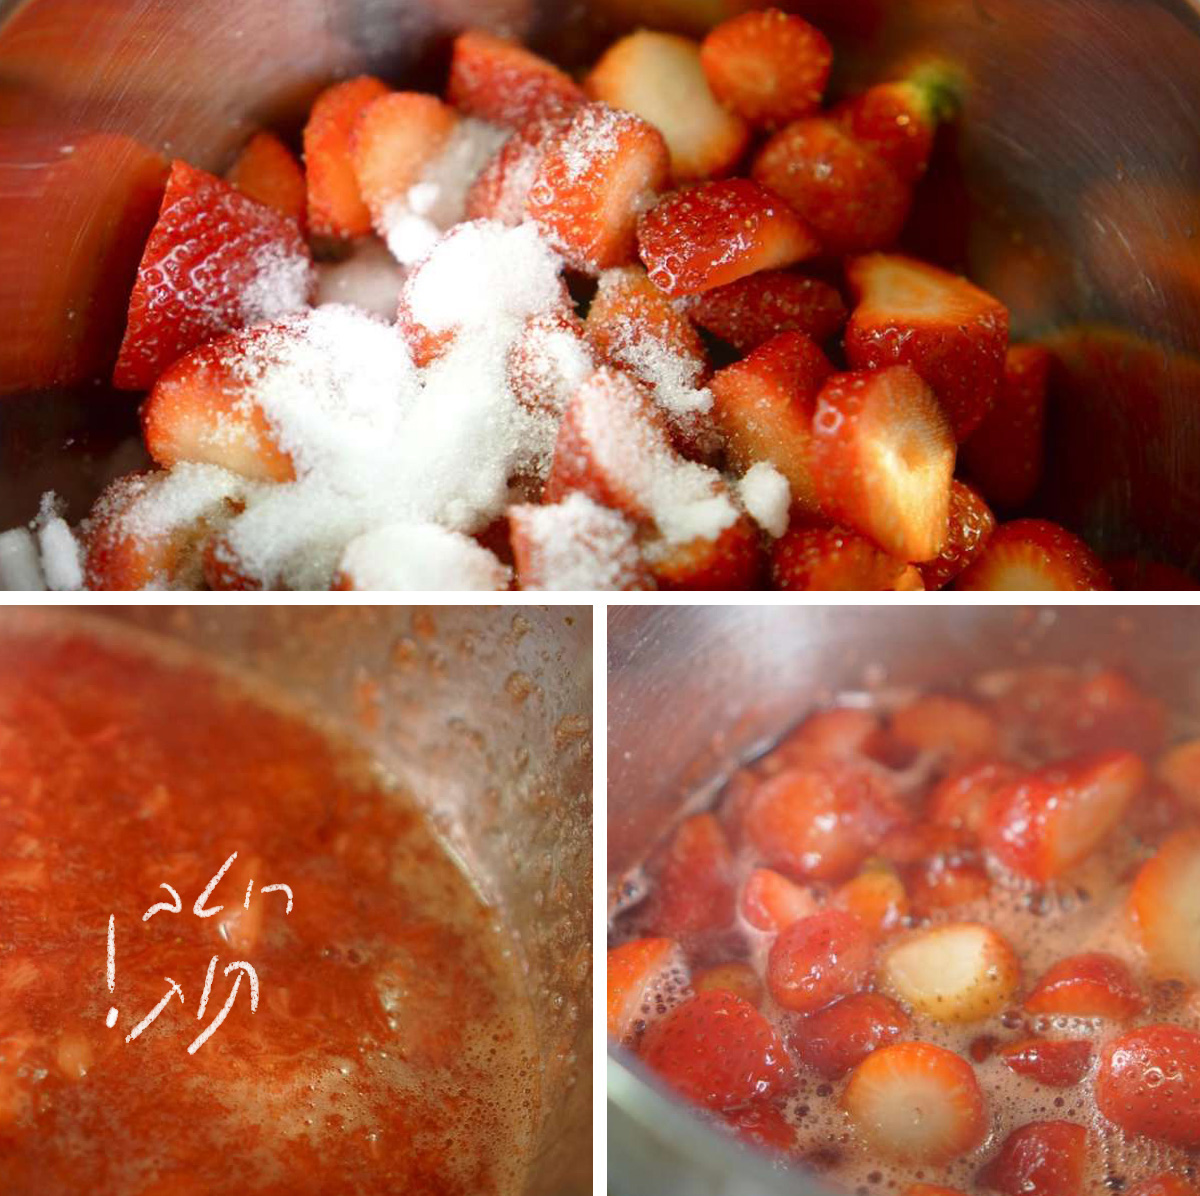 רוטב תותים, שלבי הכנה - גבישס, בלוג האוכל של מירב גביש